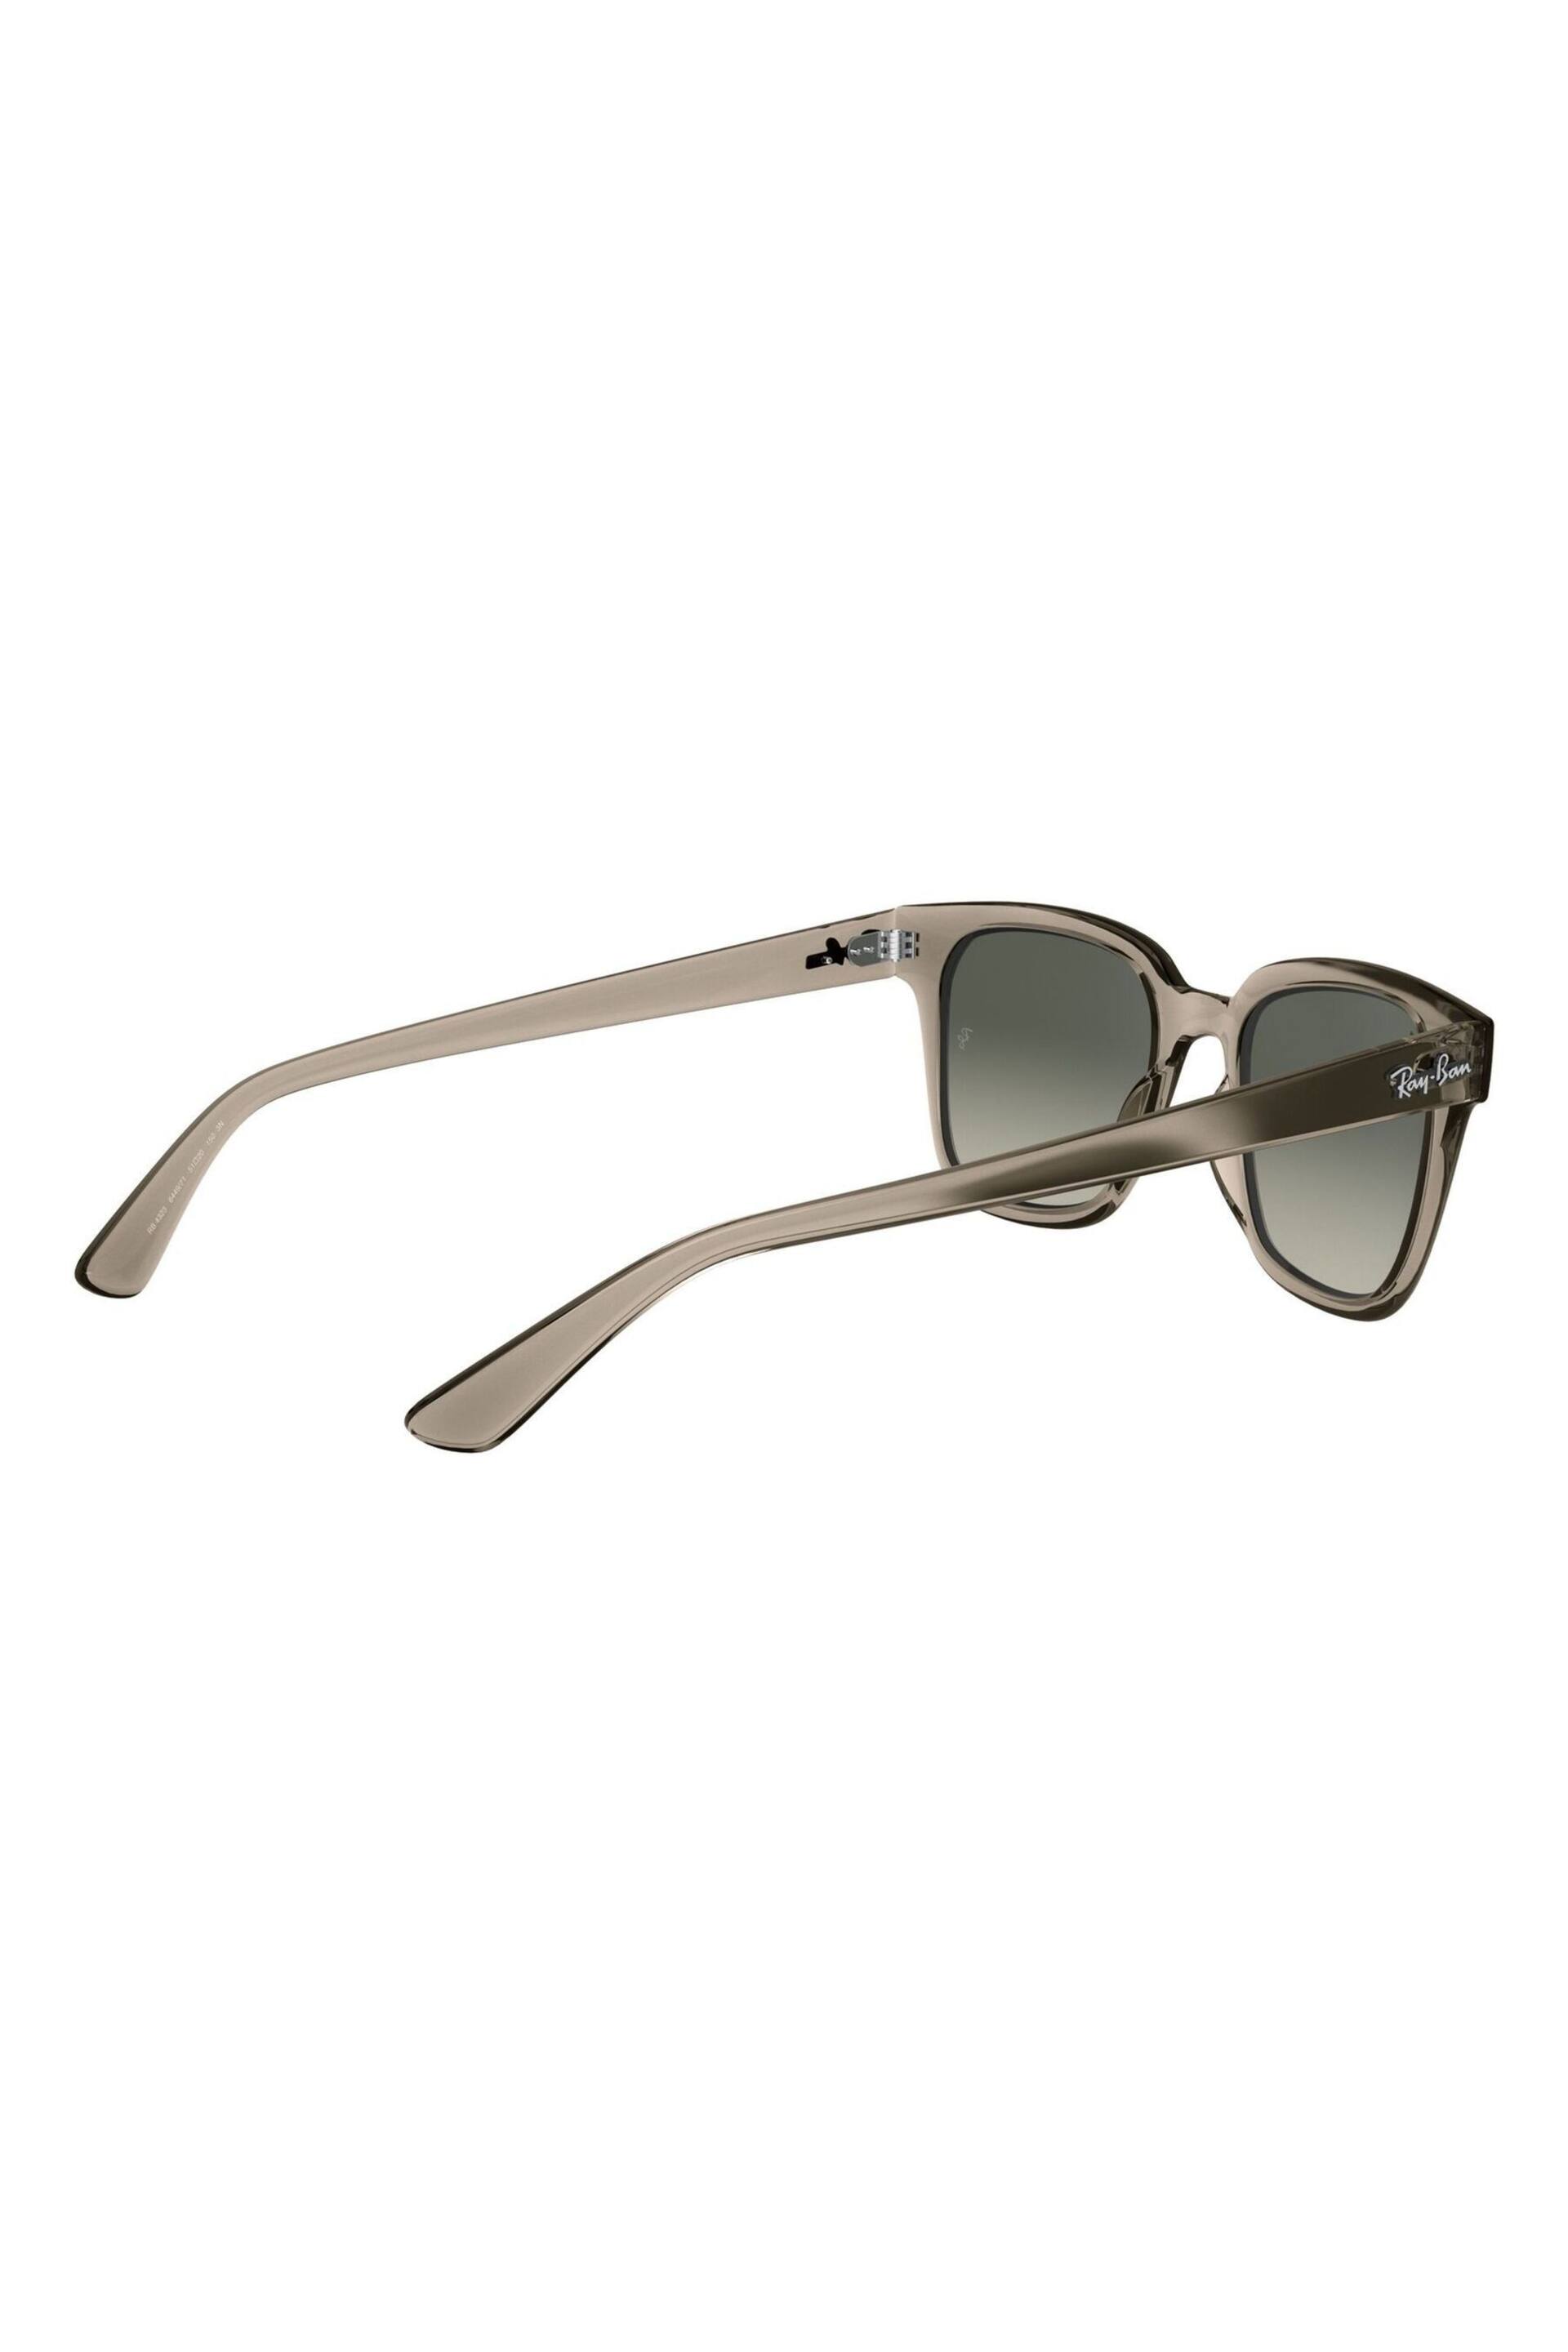 Ray-Ban RB4323 Wayfarer Sunglasses - Image 4 of 11